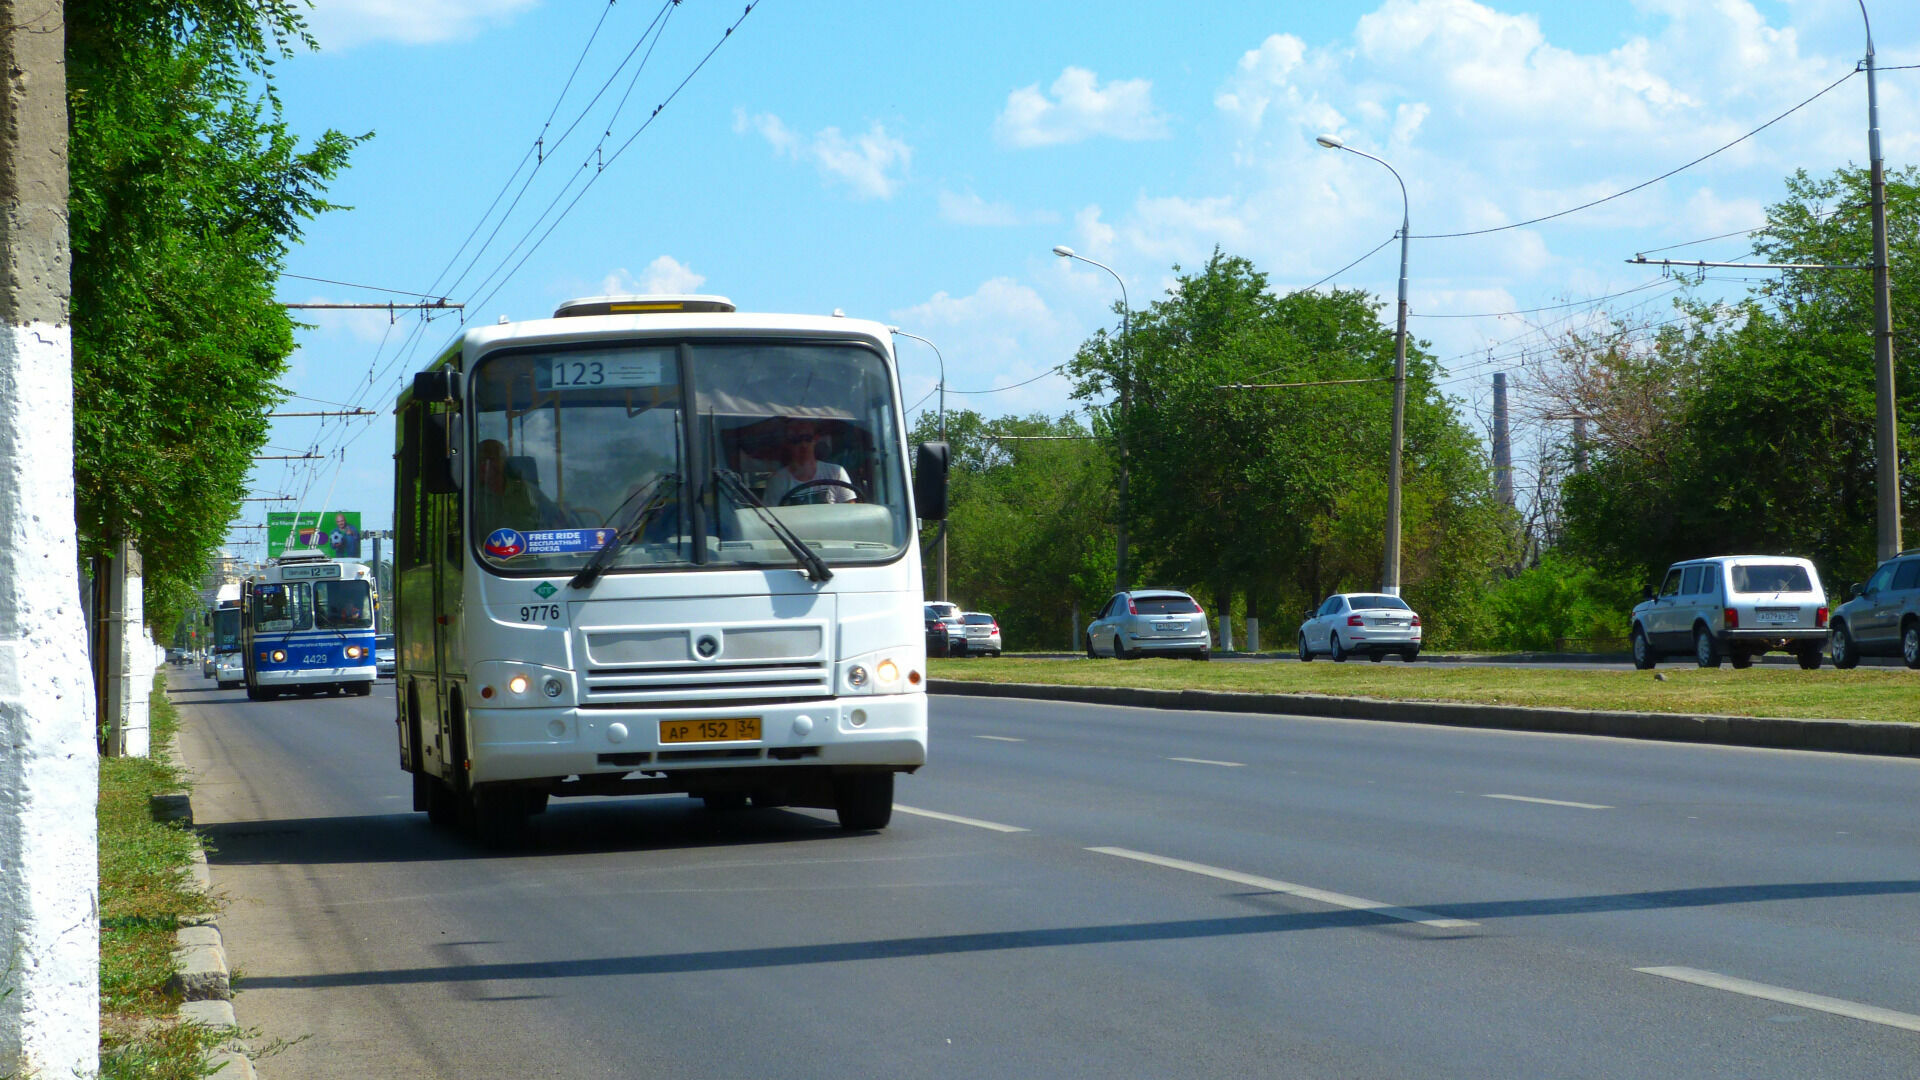 Автобус №123 будет ежедневно совершать 10 рейсов в Волгоград